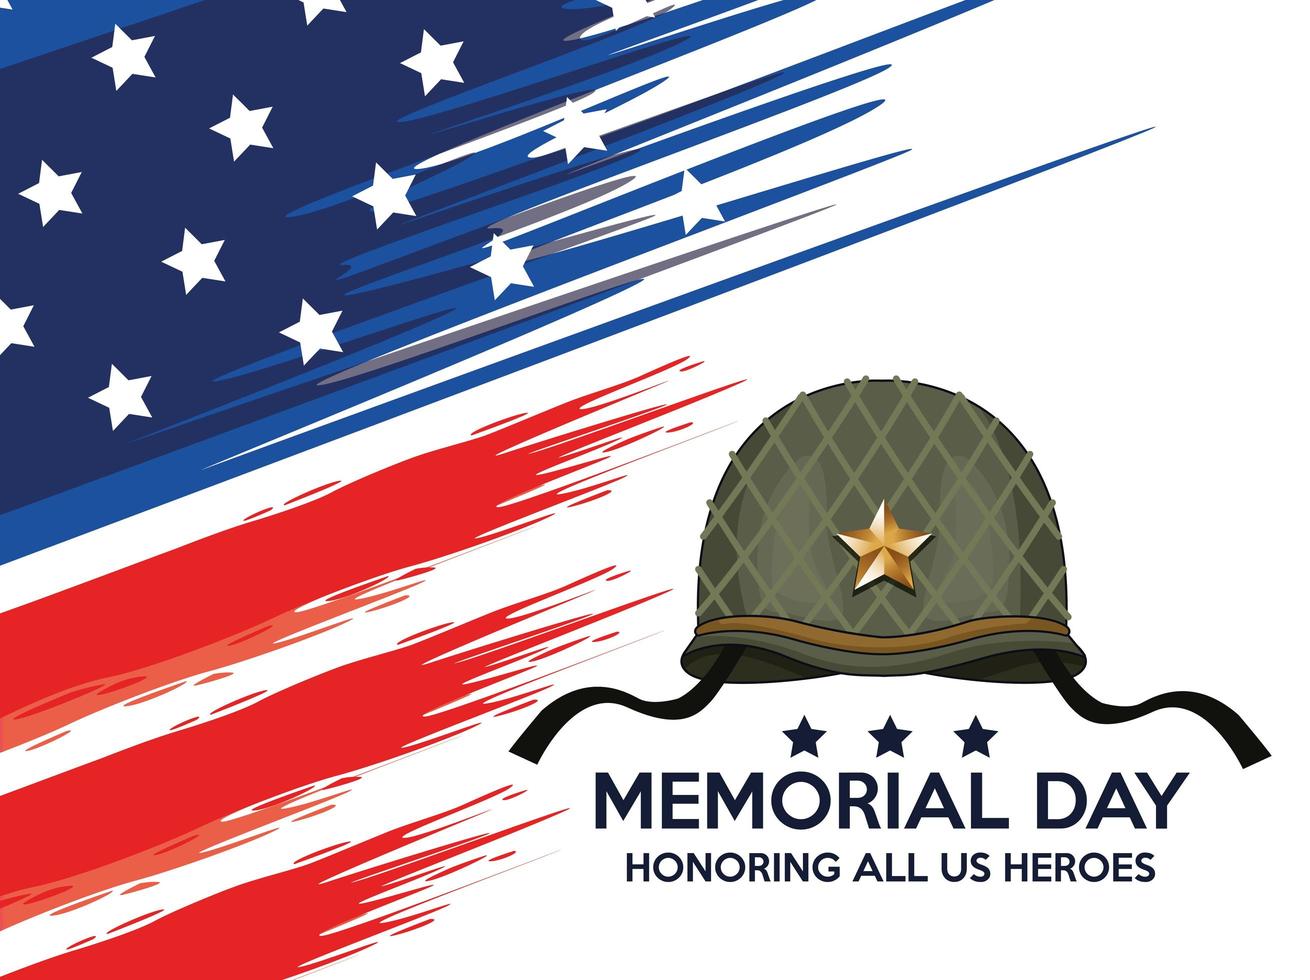 pôster de comemoração do dia do memorial com capacete militar vetor